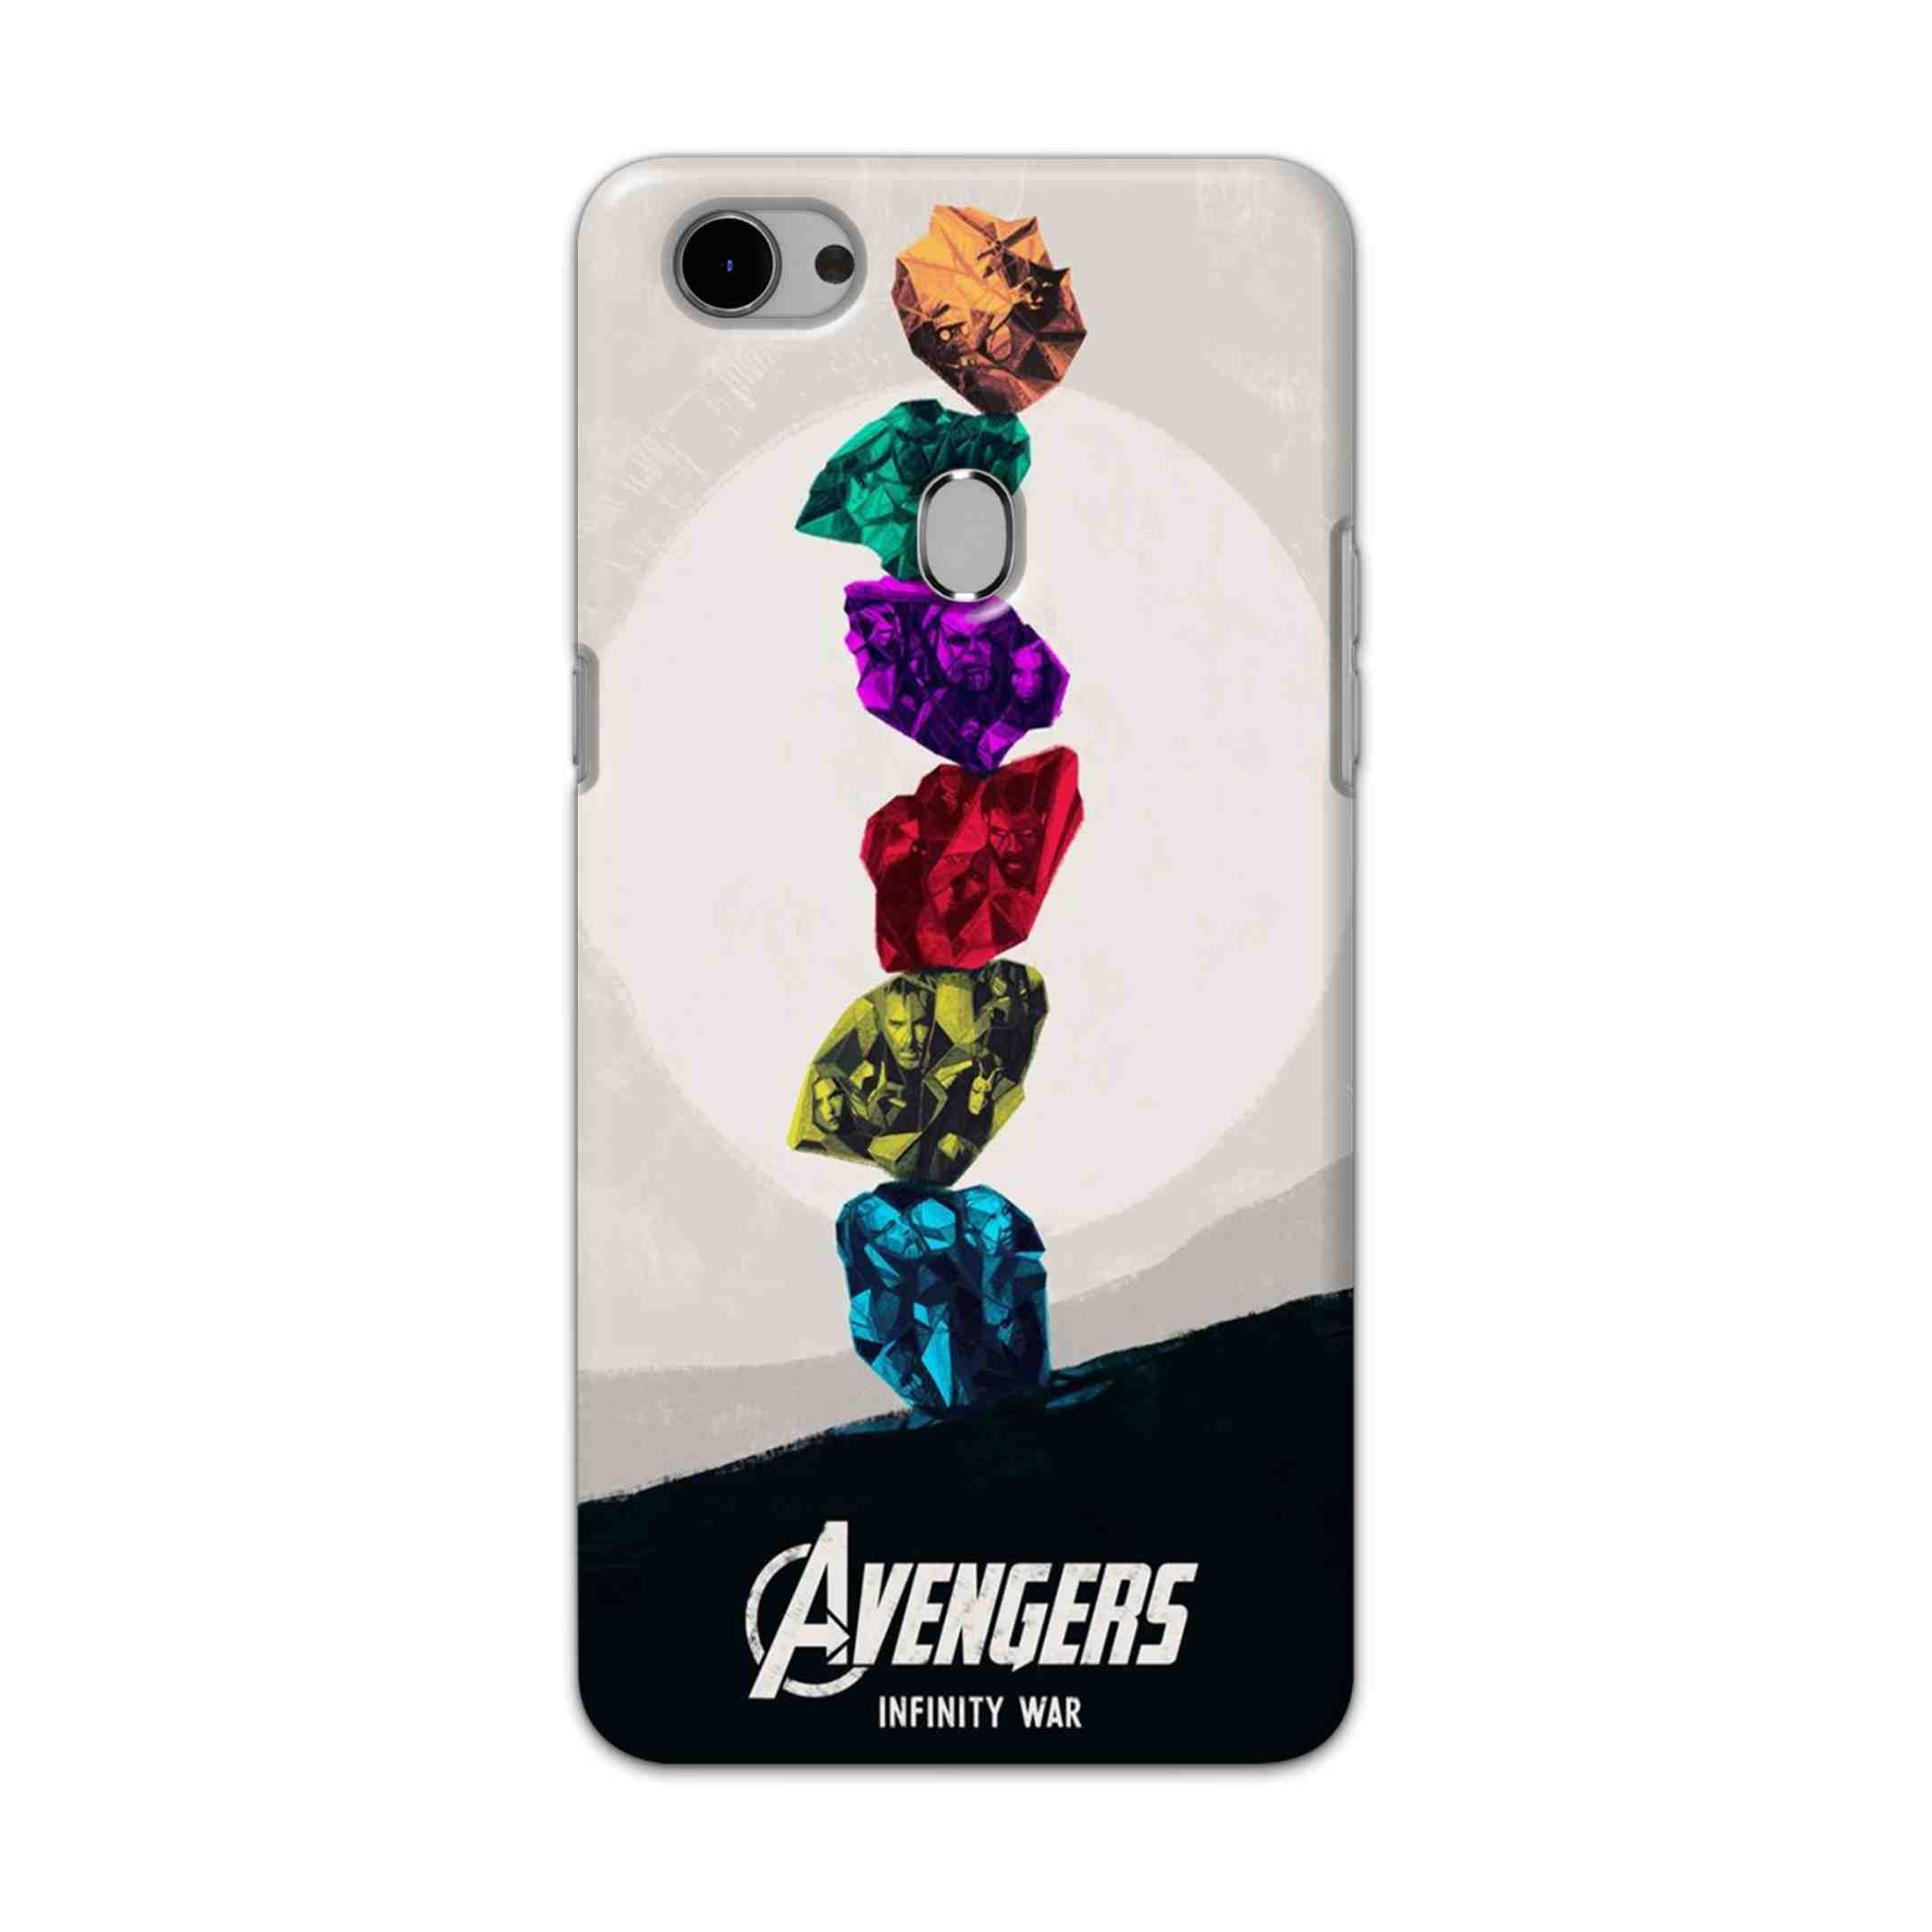 Buy Avengers Stone Hard Back Mobile Phone Case Cover For Oppo F7 Online